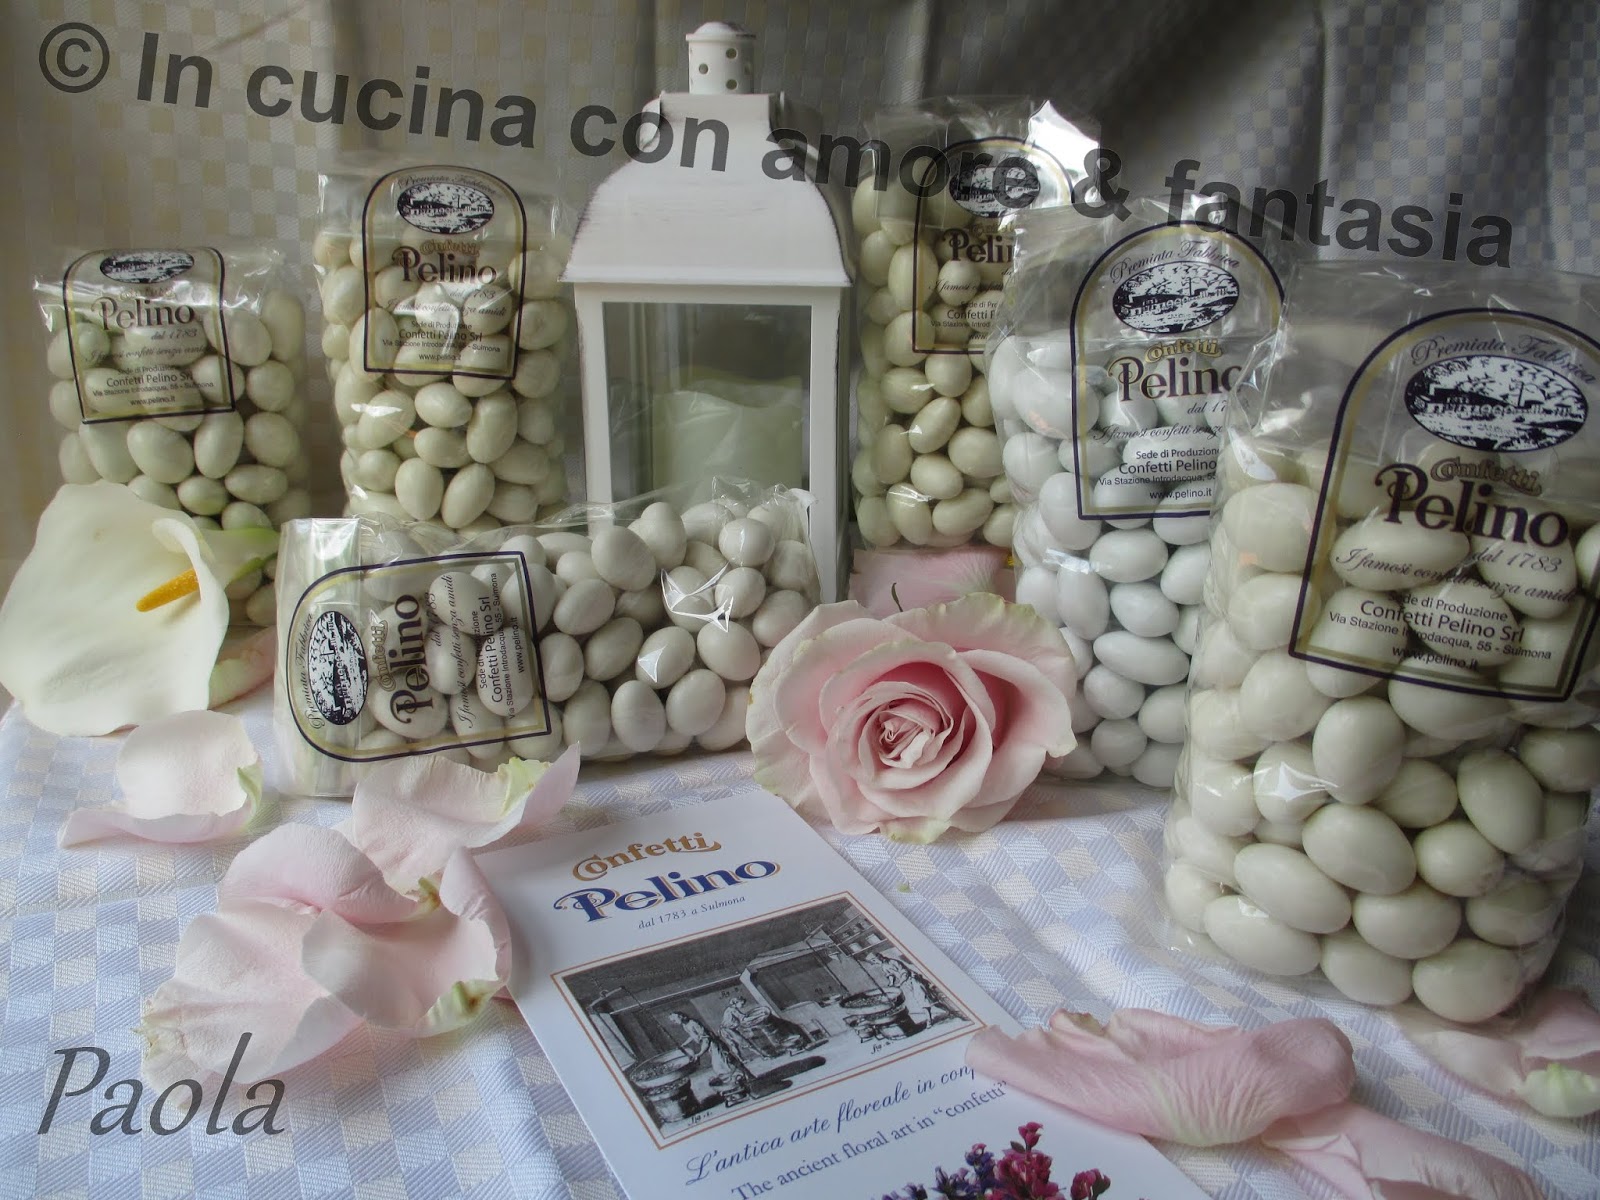 In cucina con amore & fantasia: Confetti Pelino